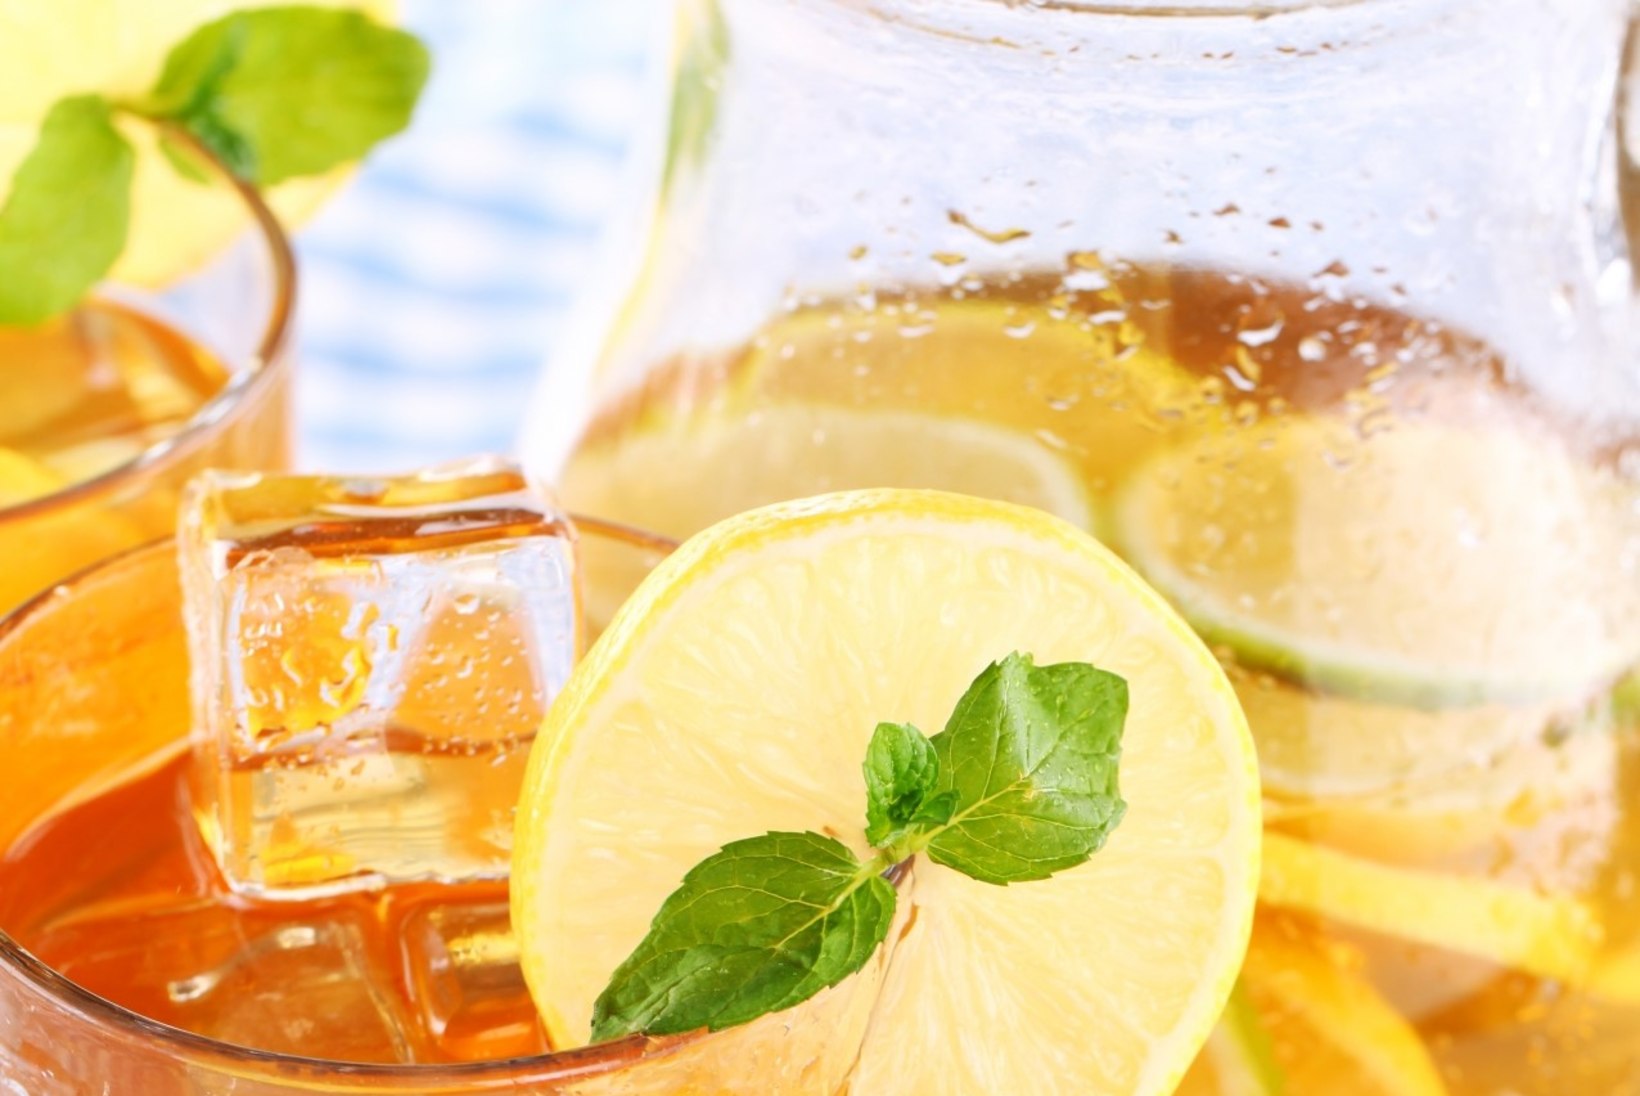 Kas sidruniga vee joomine aitab tõesti kaalu langetada?